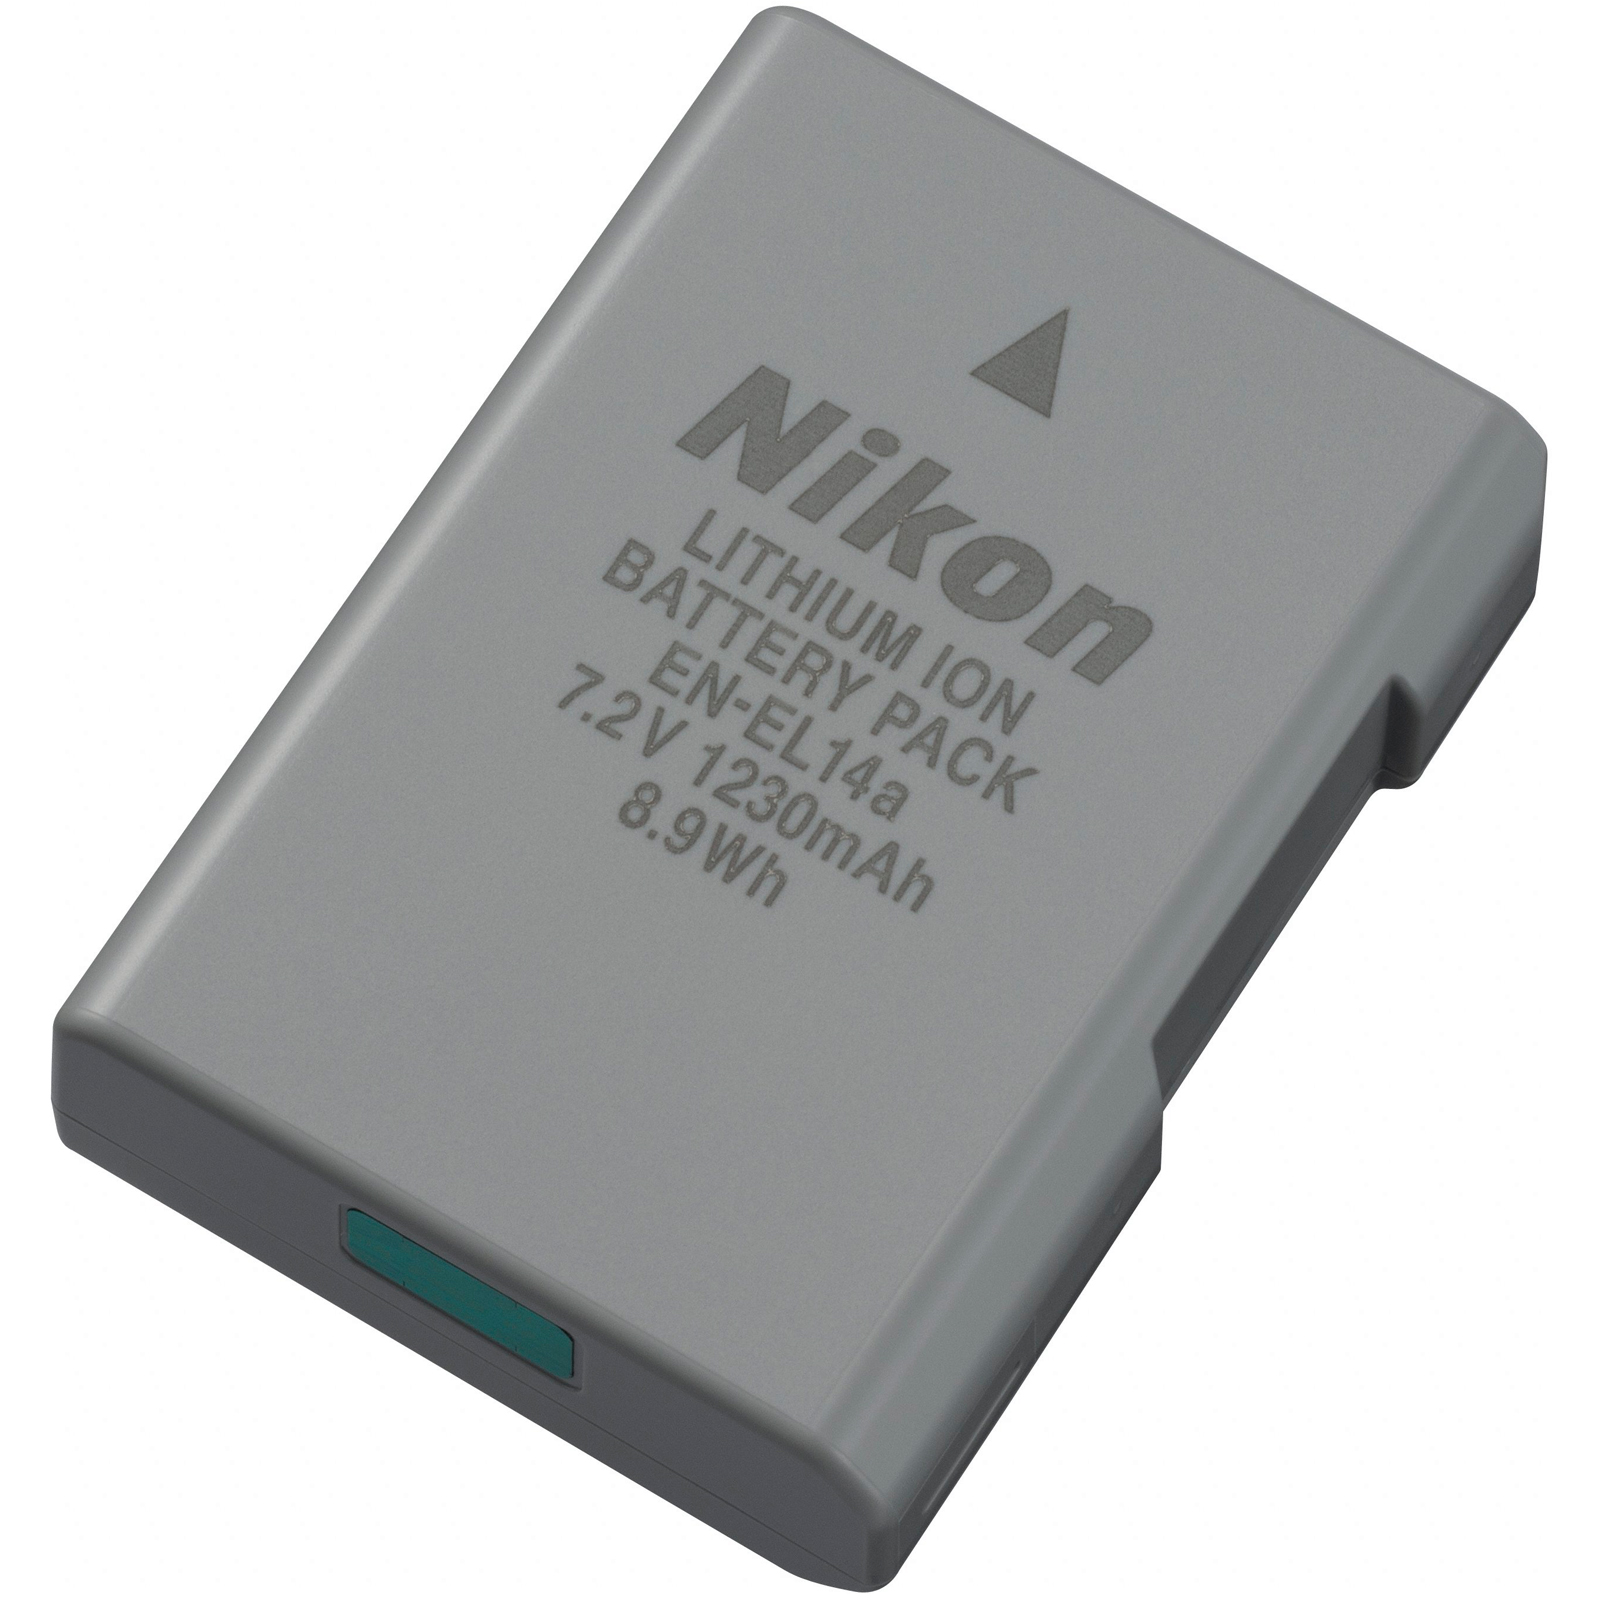 Nikon EN-EL 14a Replacement Battery - image 1 of 2